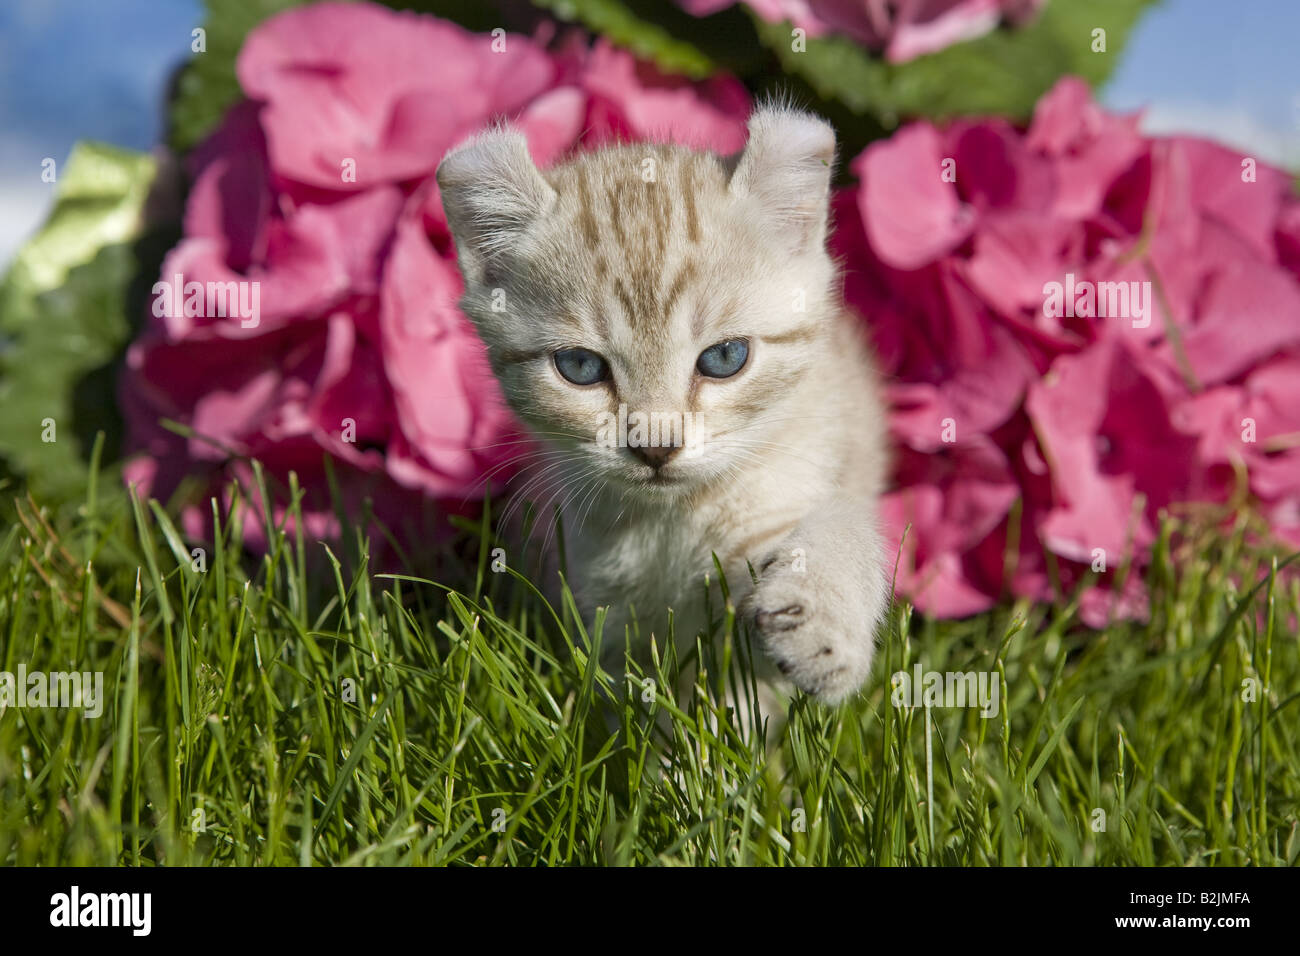 L'oreille curl adorable chaton la marche à l'extérieur dans l'herbe avec des fleurs d'hortensias en arrière-plan Banque D'Images